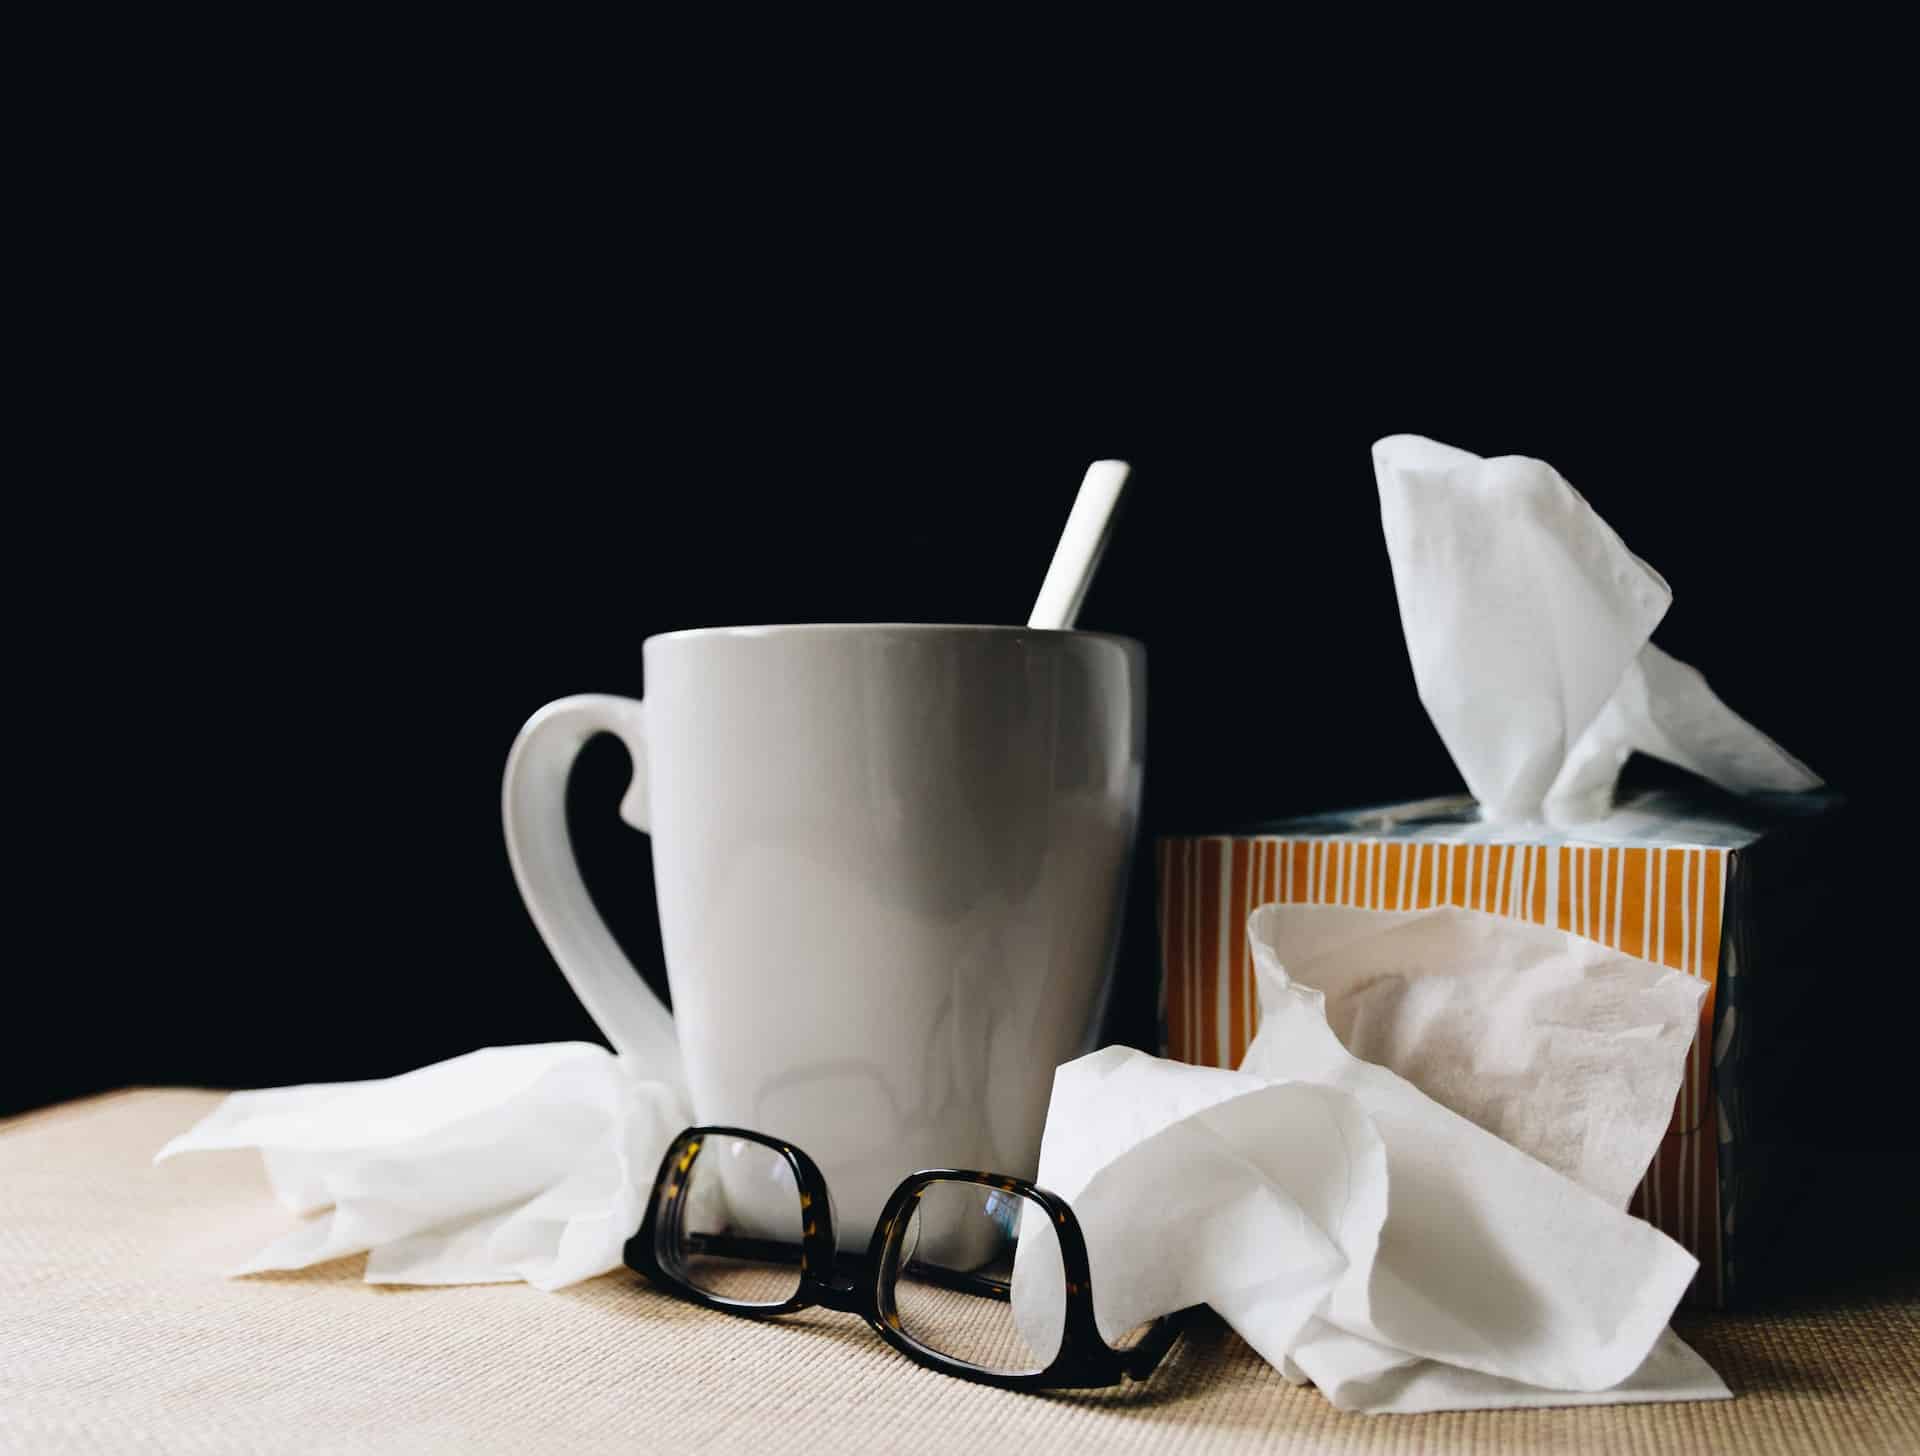 Verschleppte Grippe – das unterschätzte Risiko